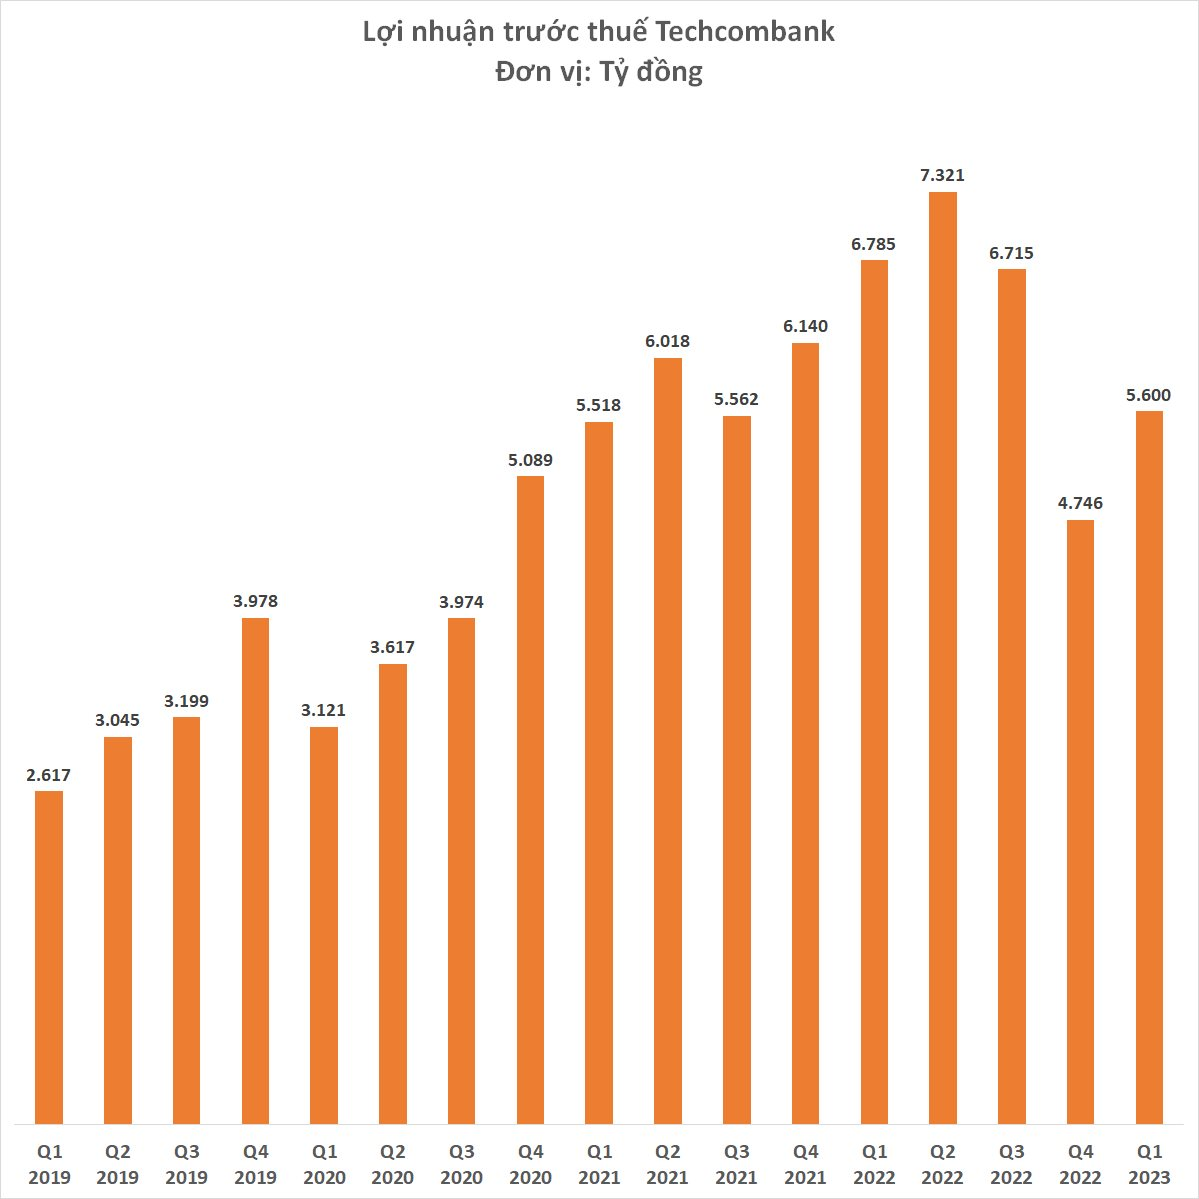 Techcombank lãi 5.600 tỷ đồng quý 1/2023, giảm 17,5% so với cùng kỳ, CASA giảm 6,3% - Ảnh 2.